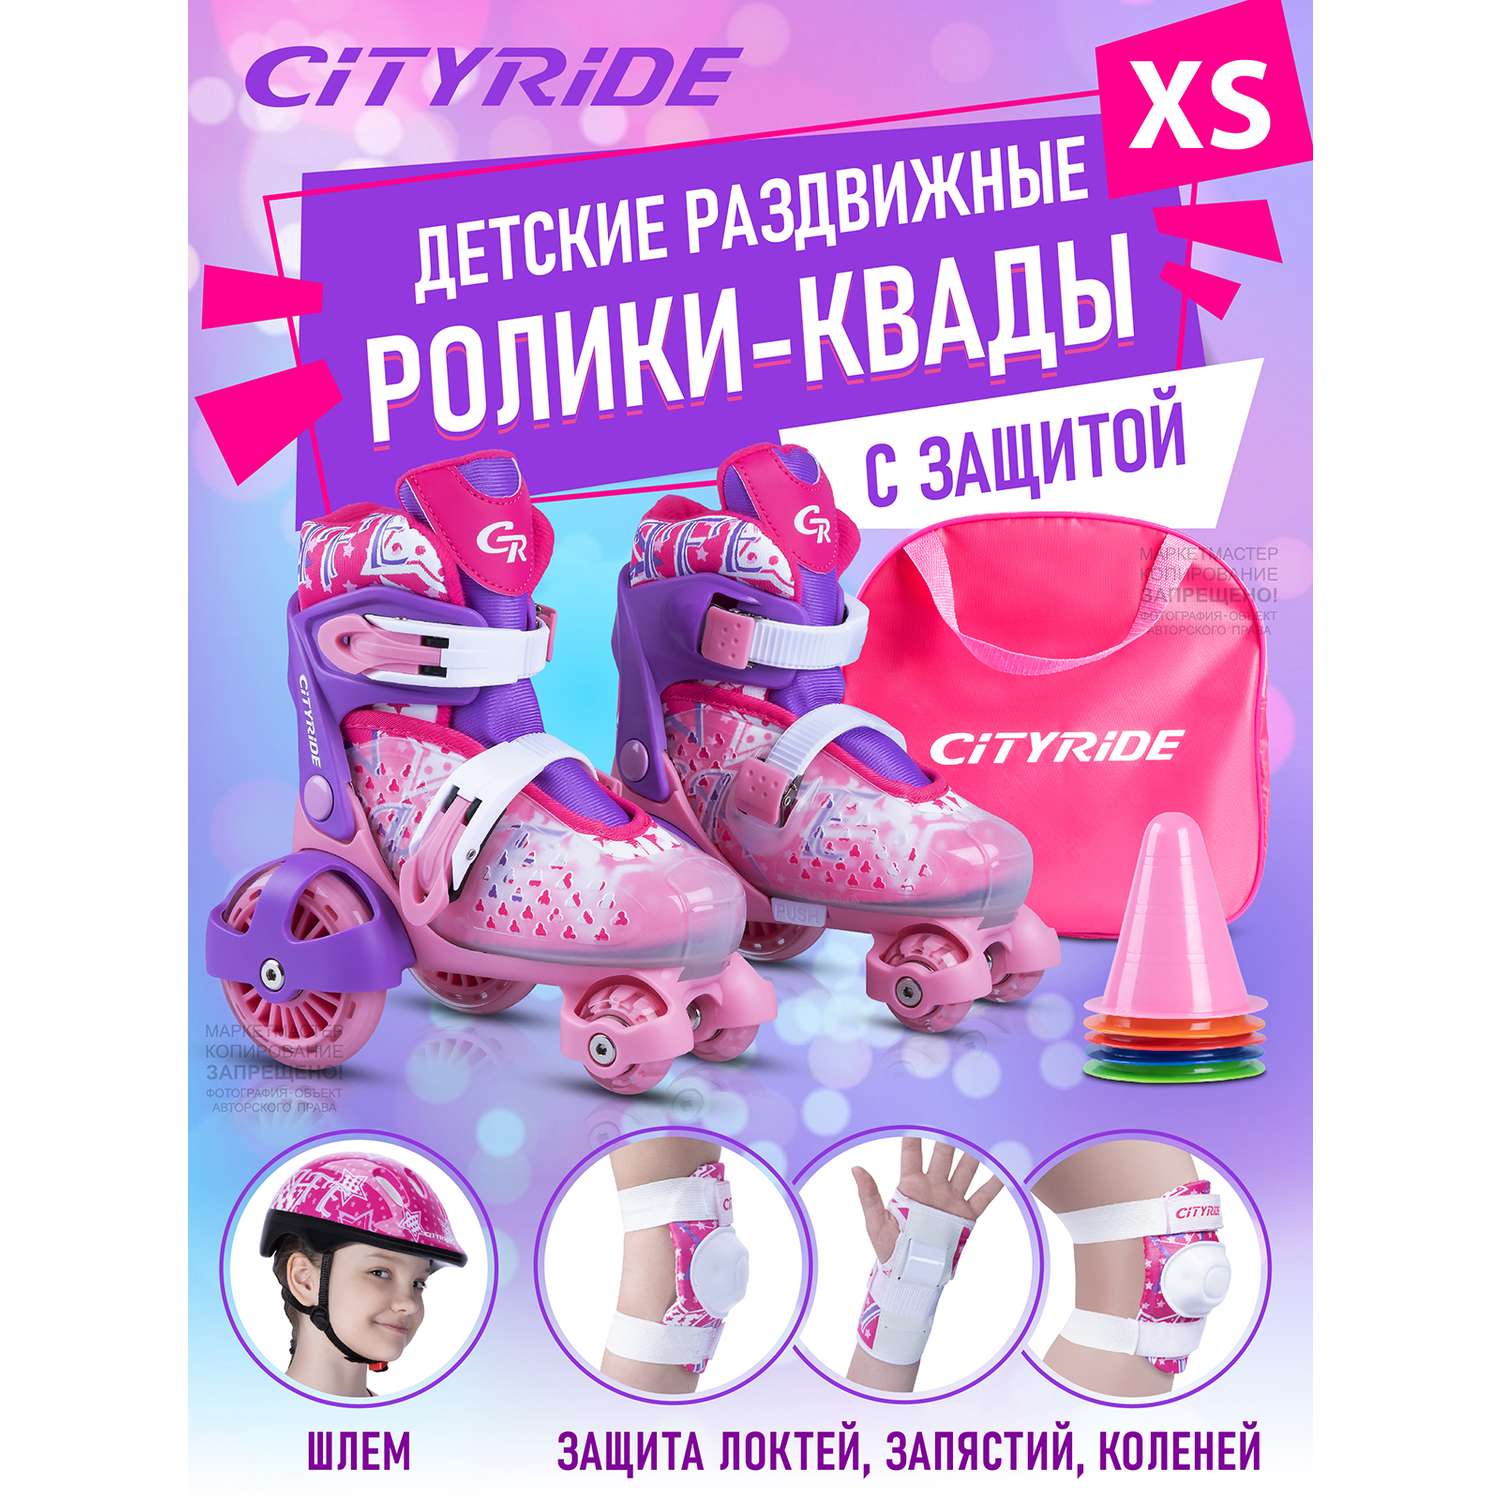 Комплект для катания CITYRIDE роликовые коньки-квады шлем защита пластиковый мысок колёса PU 80 и 40 мм - фото 1